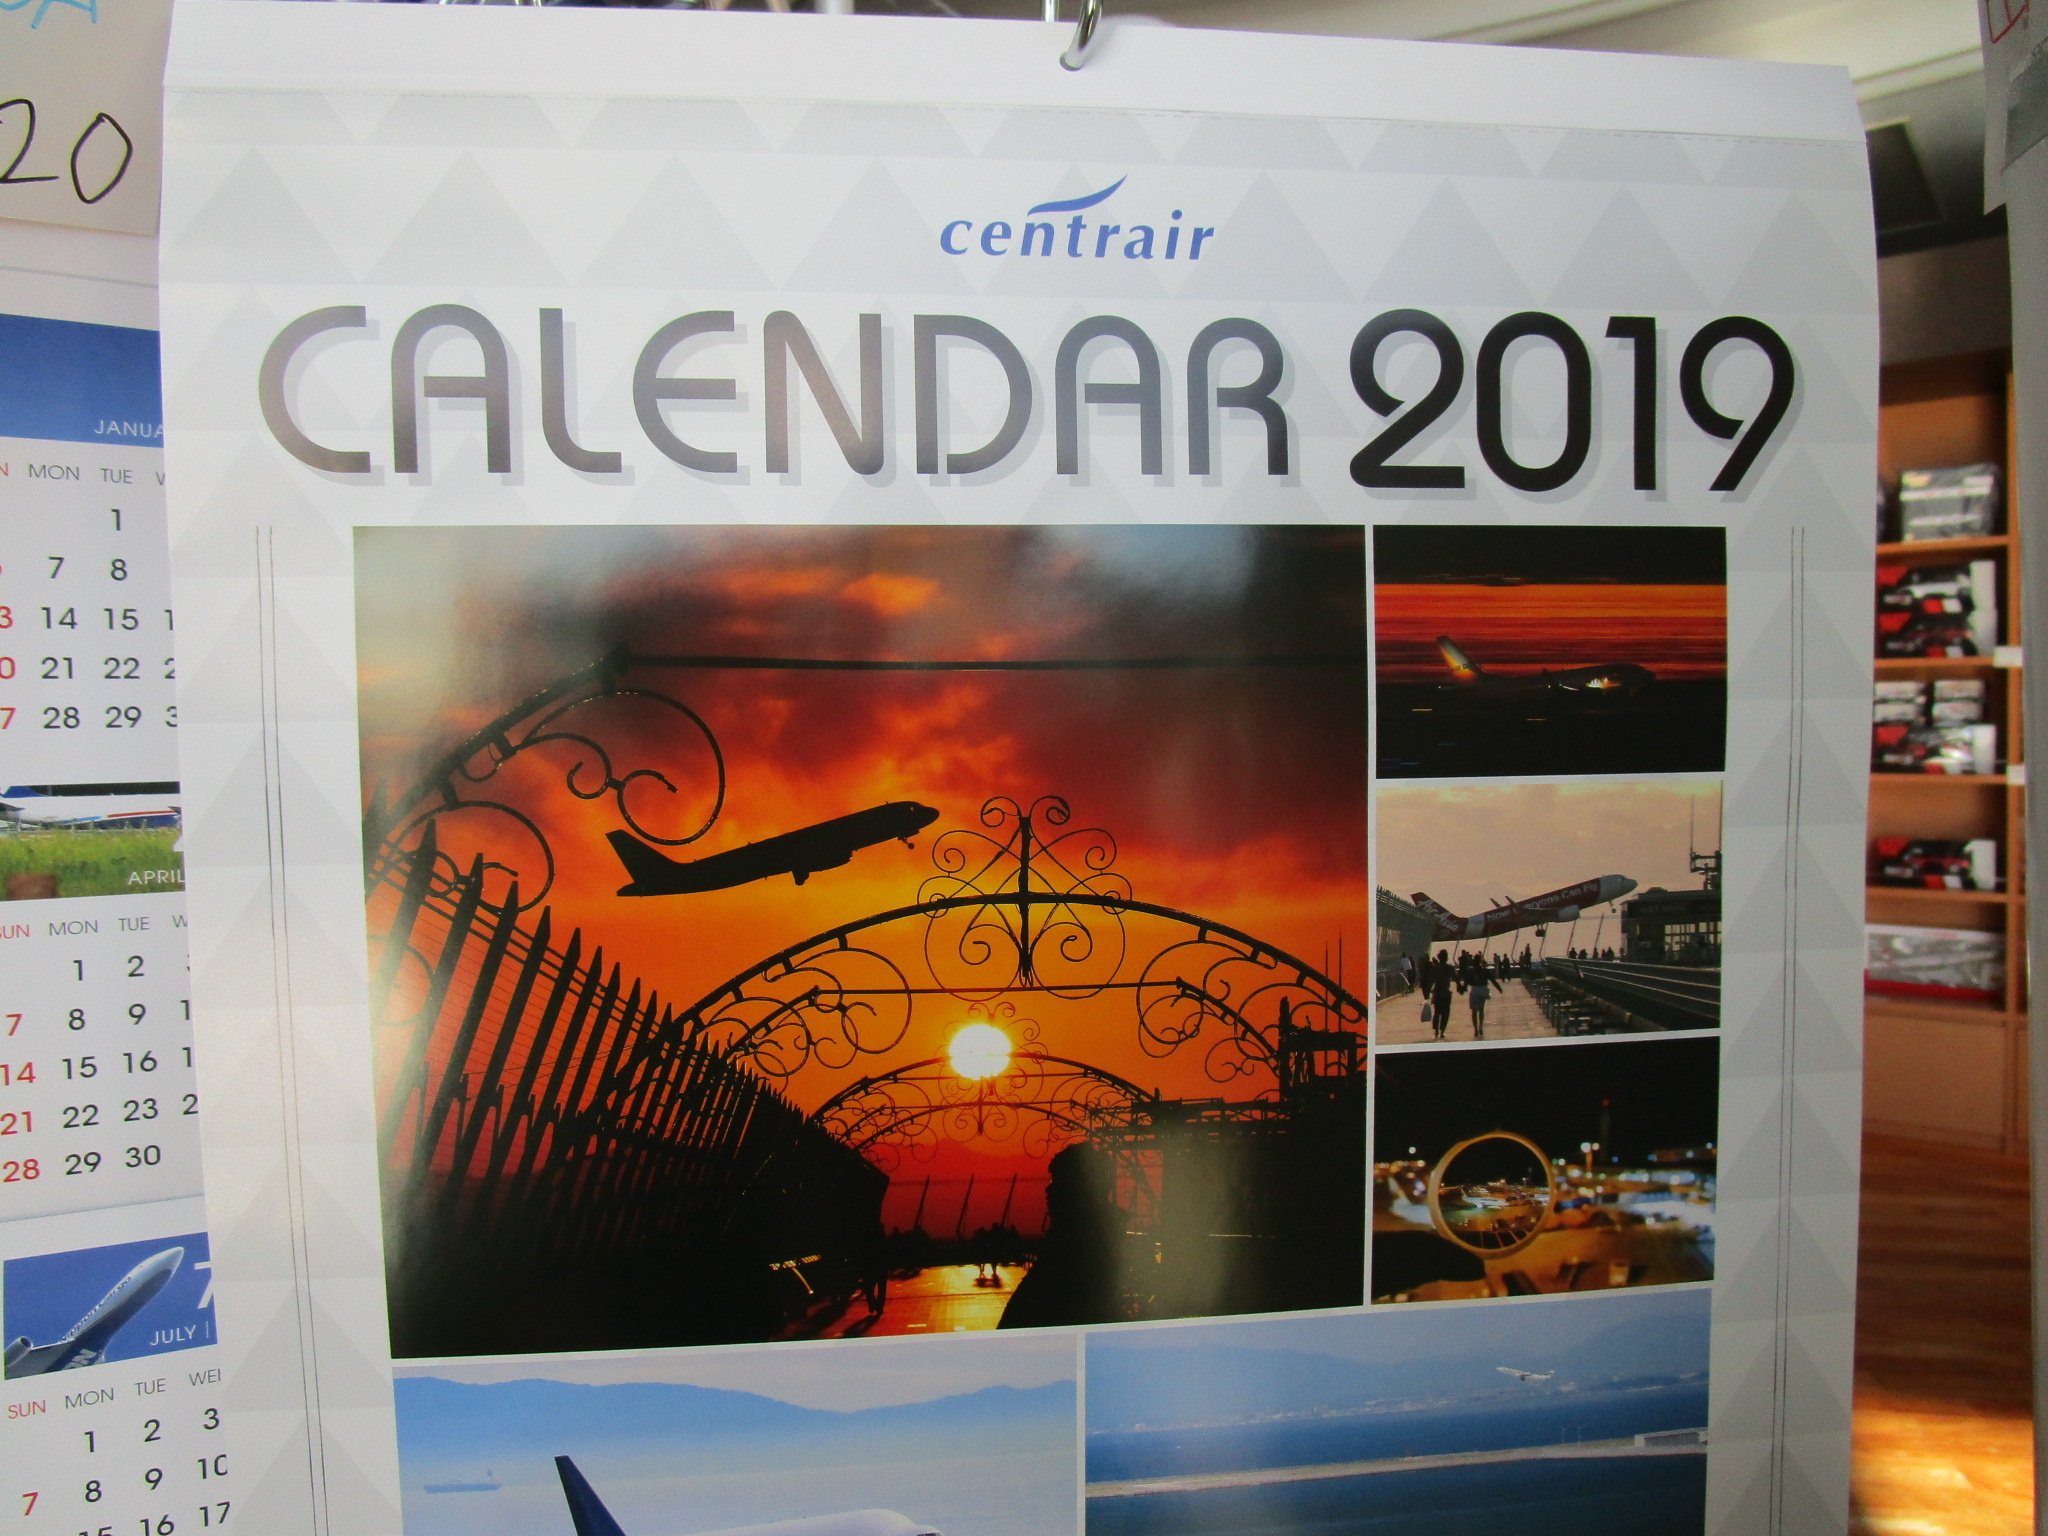 航空科学博物館 On Twitter 博物館売店及び成田空港5階のバイプレーンでは続々と2019年カレンダーの取扱が始まってます 是非御来店ください 数に限りがありますのでお早めに Jal Kix Nca Ana Ngo Ado 世界のエアライナー カレンダー2019 Https T Co